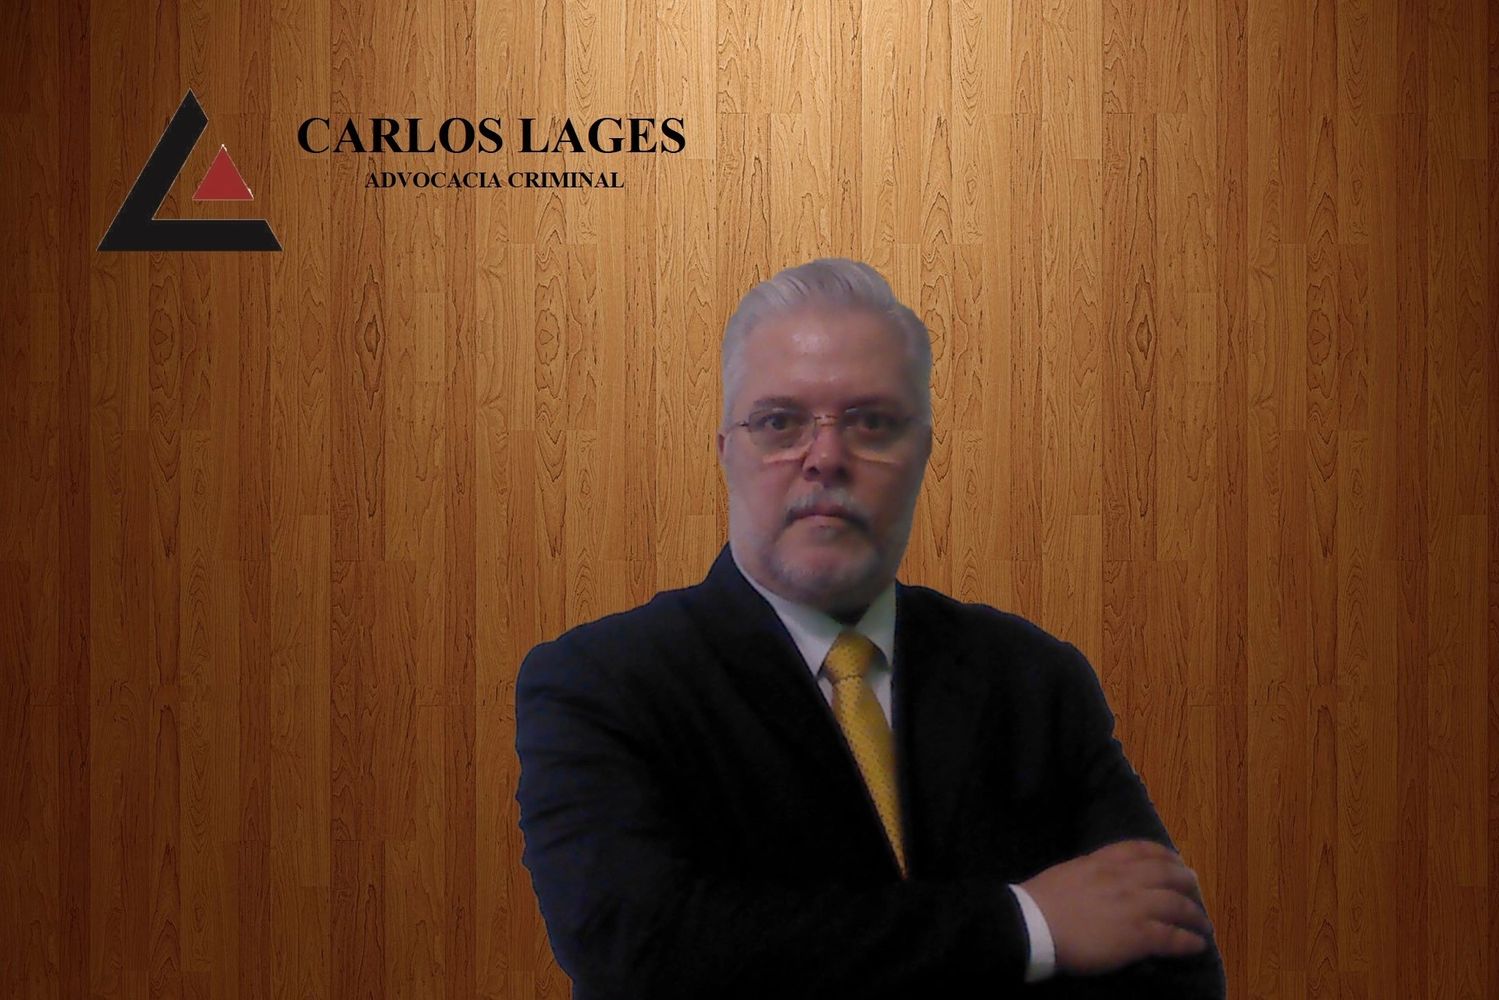 Advogado criminalista Carlos Lages